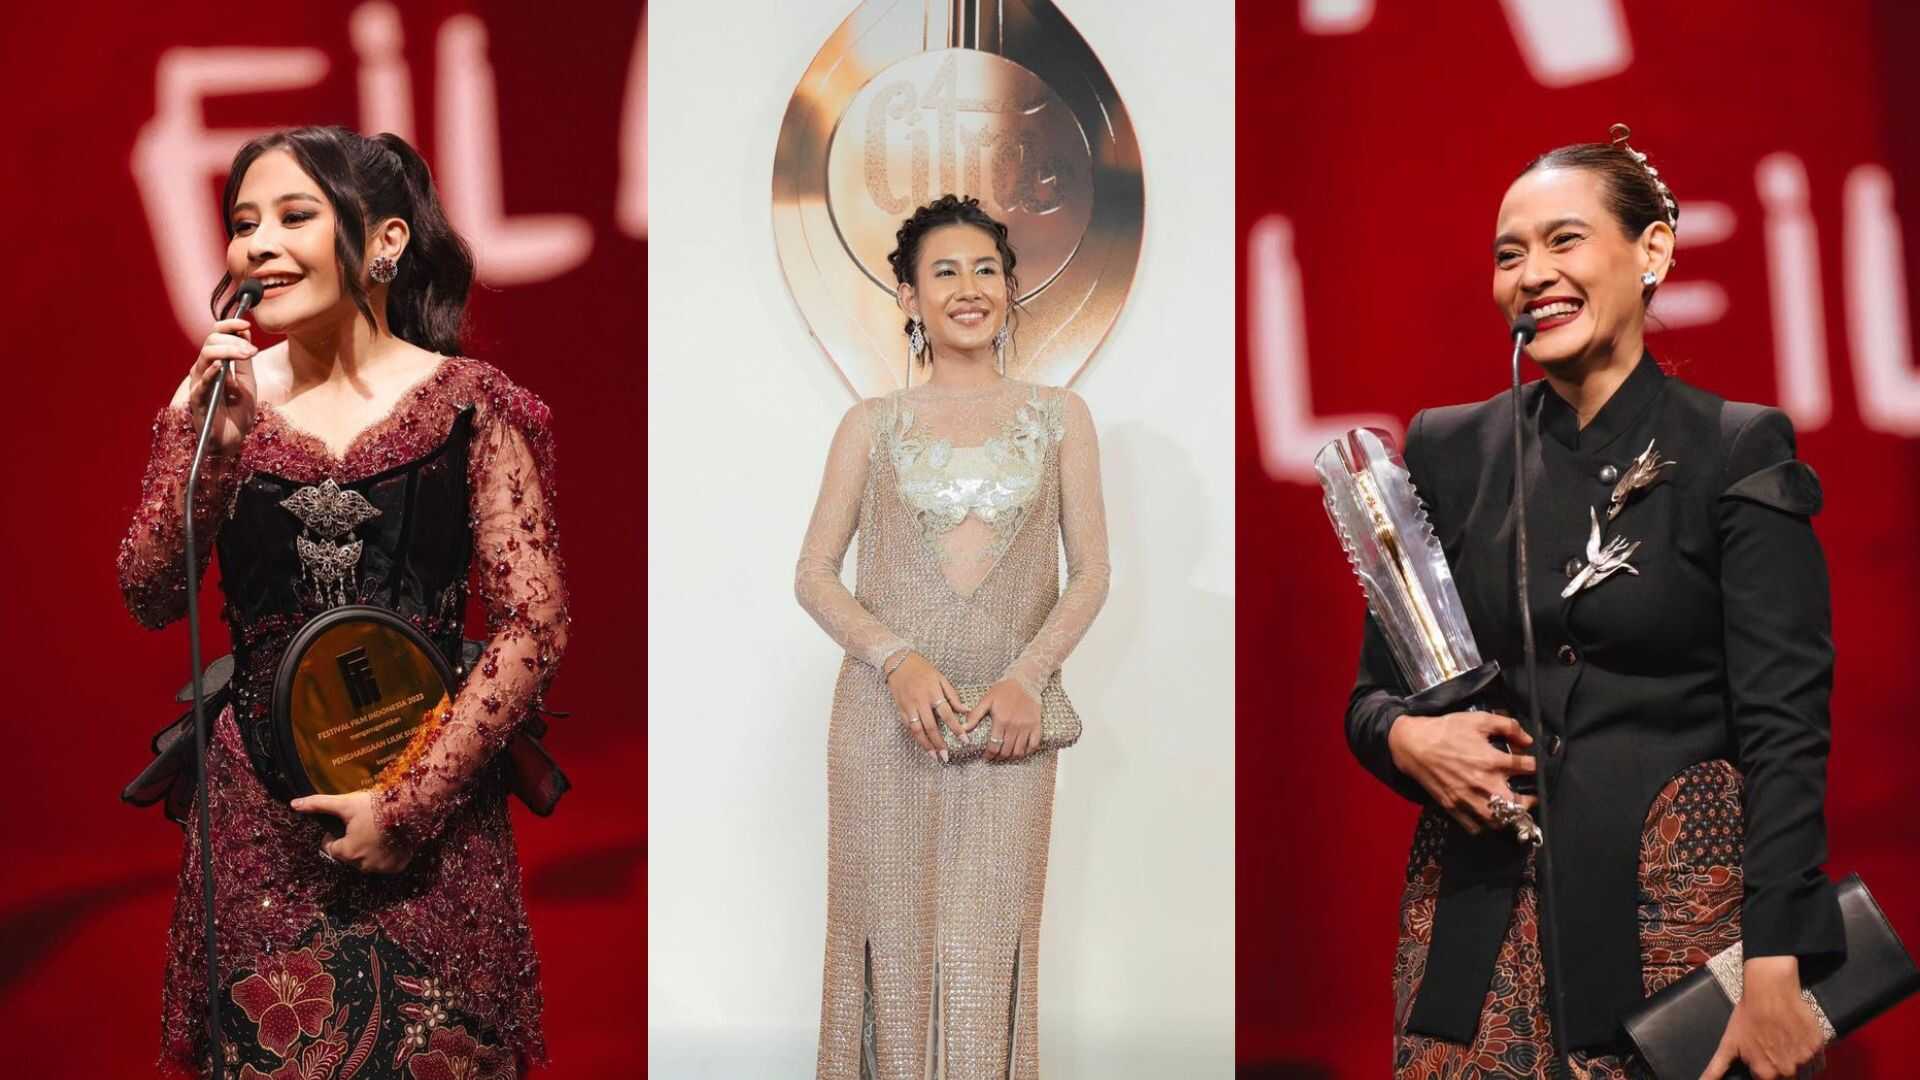 Female Daily – Intip Penampilan Para Bintang di Red Carpet Festival Film Indonesia!